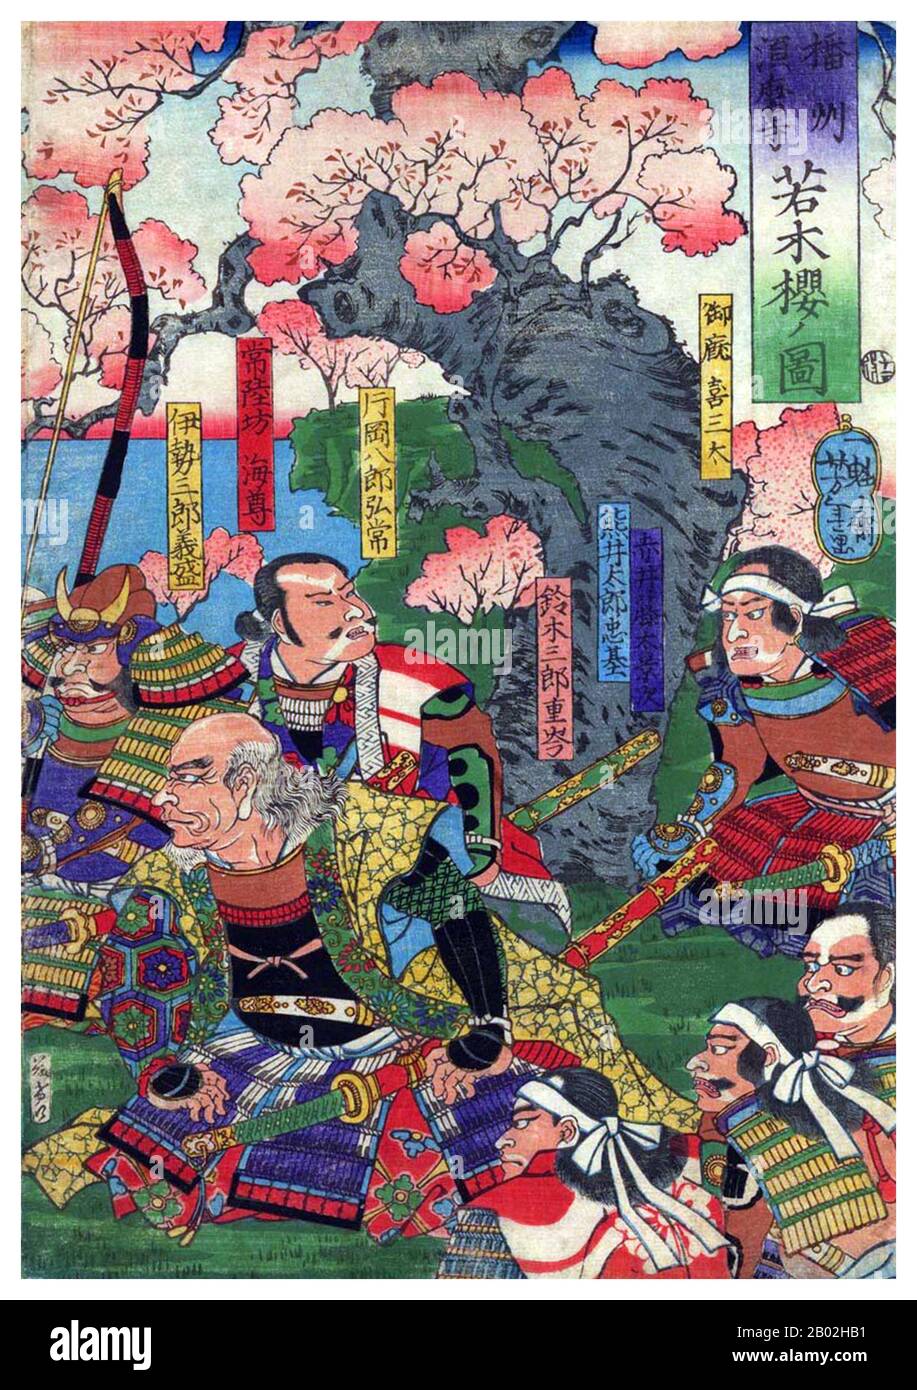 Minamoto no Yoshitsune (源 義経, 1159 - 15. Juni 1189) war ein General des Minamoto-Clans von Japan in der späten Heian- und frühen Kamakura-Zeit. Yoshitsune war der neunte Sohn von Minamoto no Yoshitomo und der dritte und letzte Sohn und Kind, den Yoshitomo mit Tokiwa Gozen vätern würde. Yoshitsunes älterer Bruder Minamoto no Yoritomo (der dritte Sohn von Yoshitomo) gründete das Shogunat Kamakura. Er gilt als einer der größten und beliebtesten Krieger seiner Epoche und einer der berühmtesten Samurai-Kämpfer in der Geschichte Japans. Musashibō Benkei (武蔵坊弁慶, 1155-1189), im Volksmund Benke genannt Stockfoto